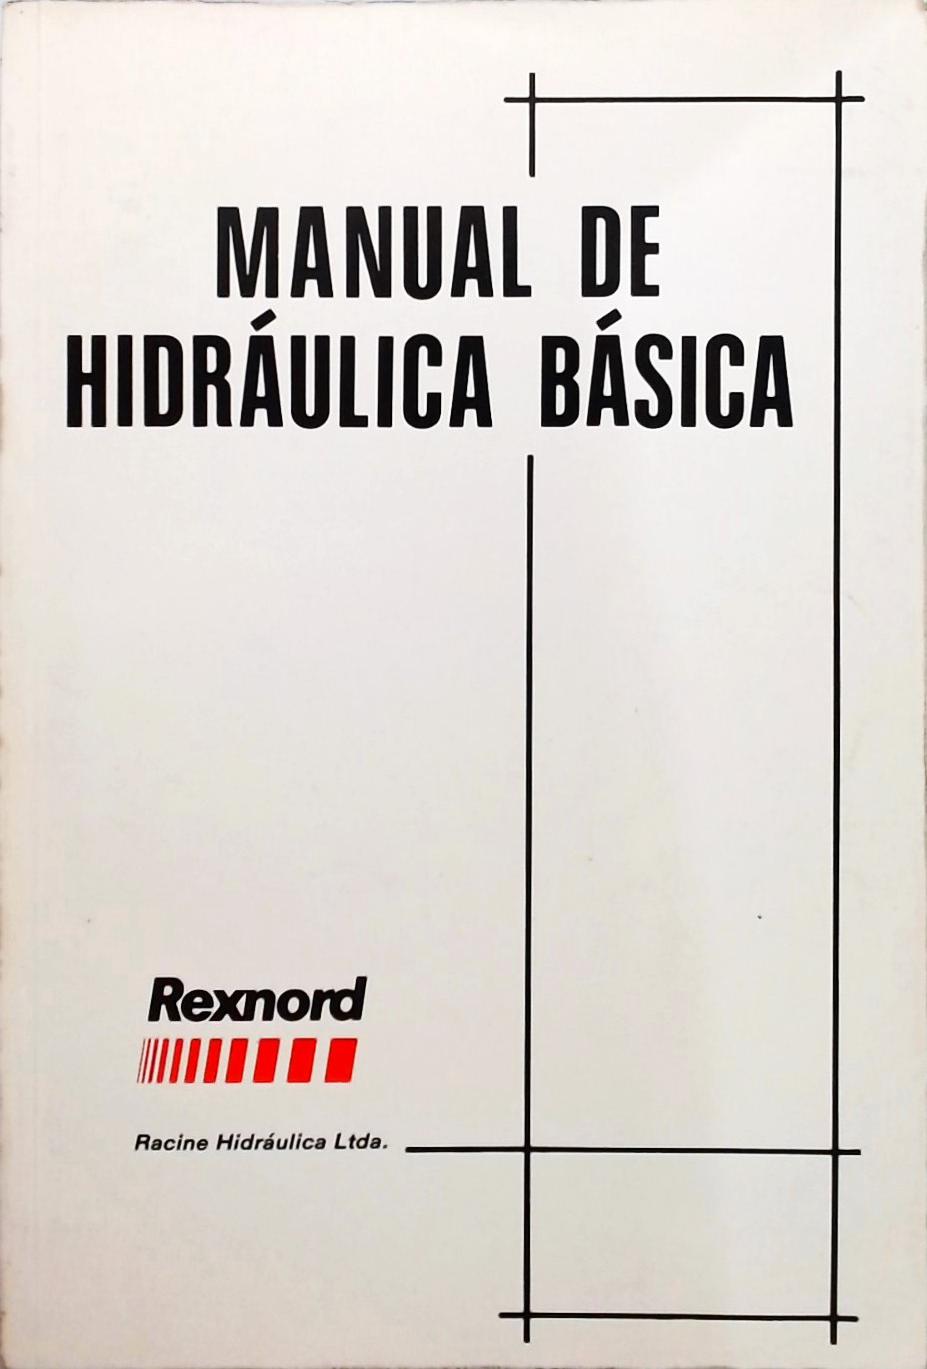 Manual de Hidráulica Básica Rexnord